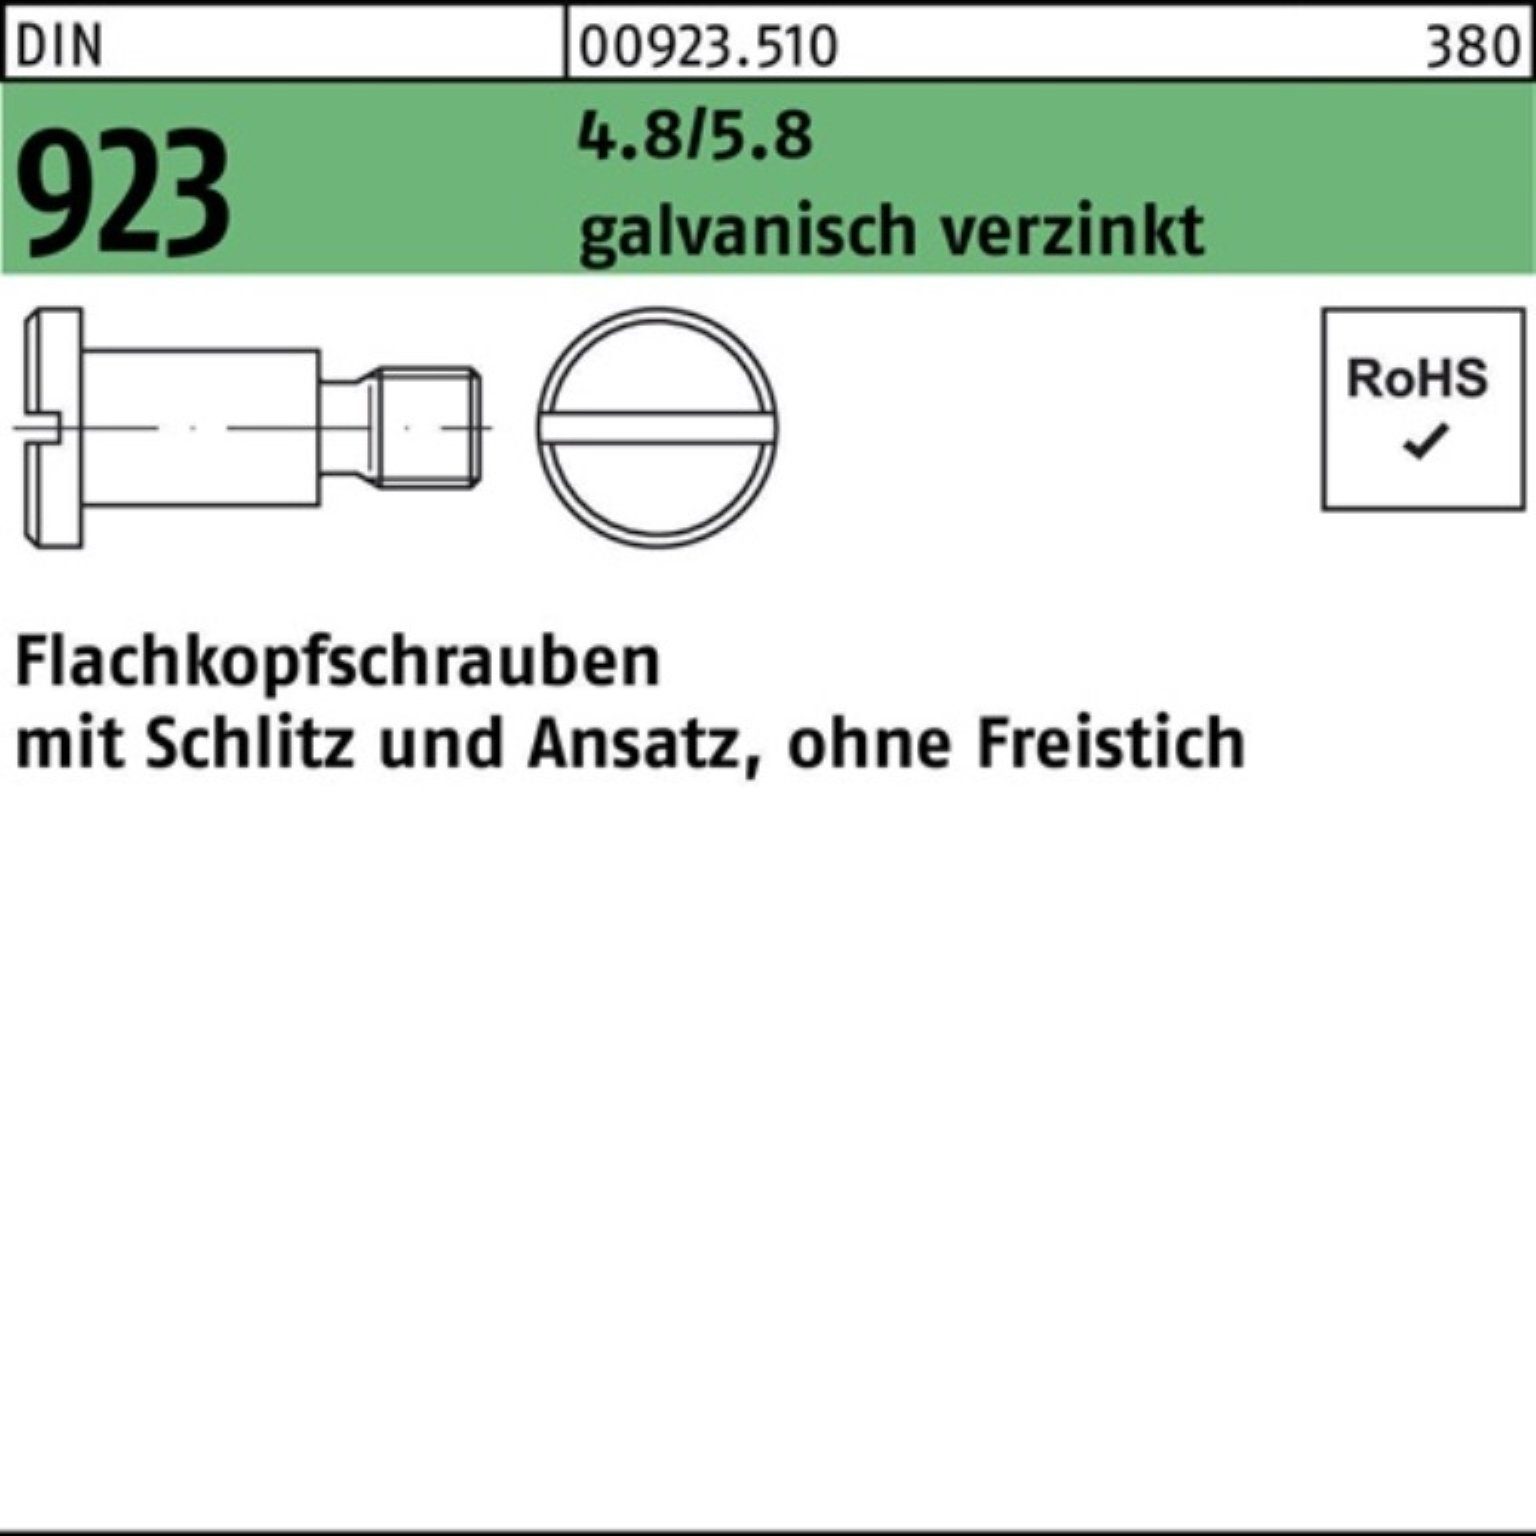 Reyher Schraube 100er Schlitz/Ansatz g Pack Flachkopfschraube 923 4.8/5.8 DIN M6x8x9,0